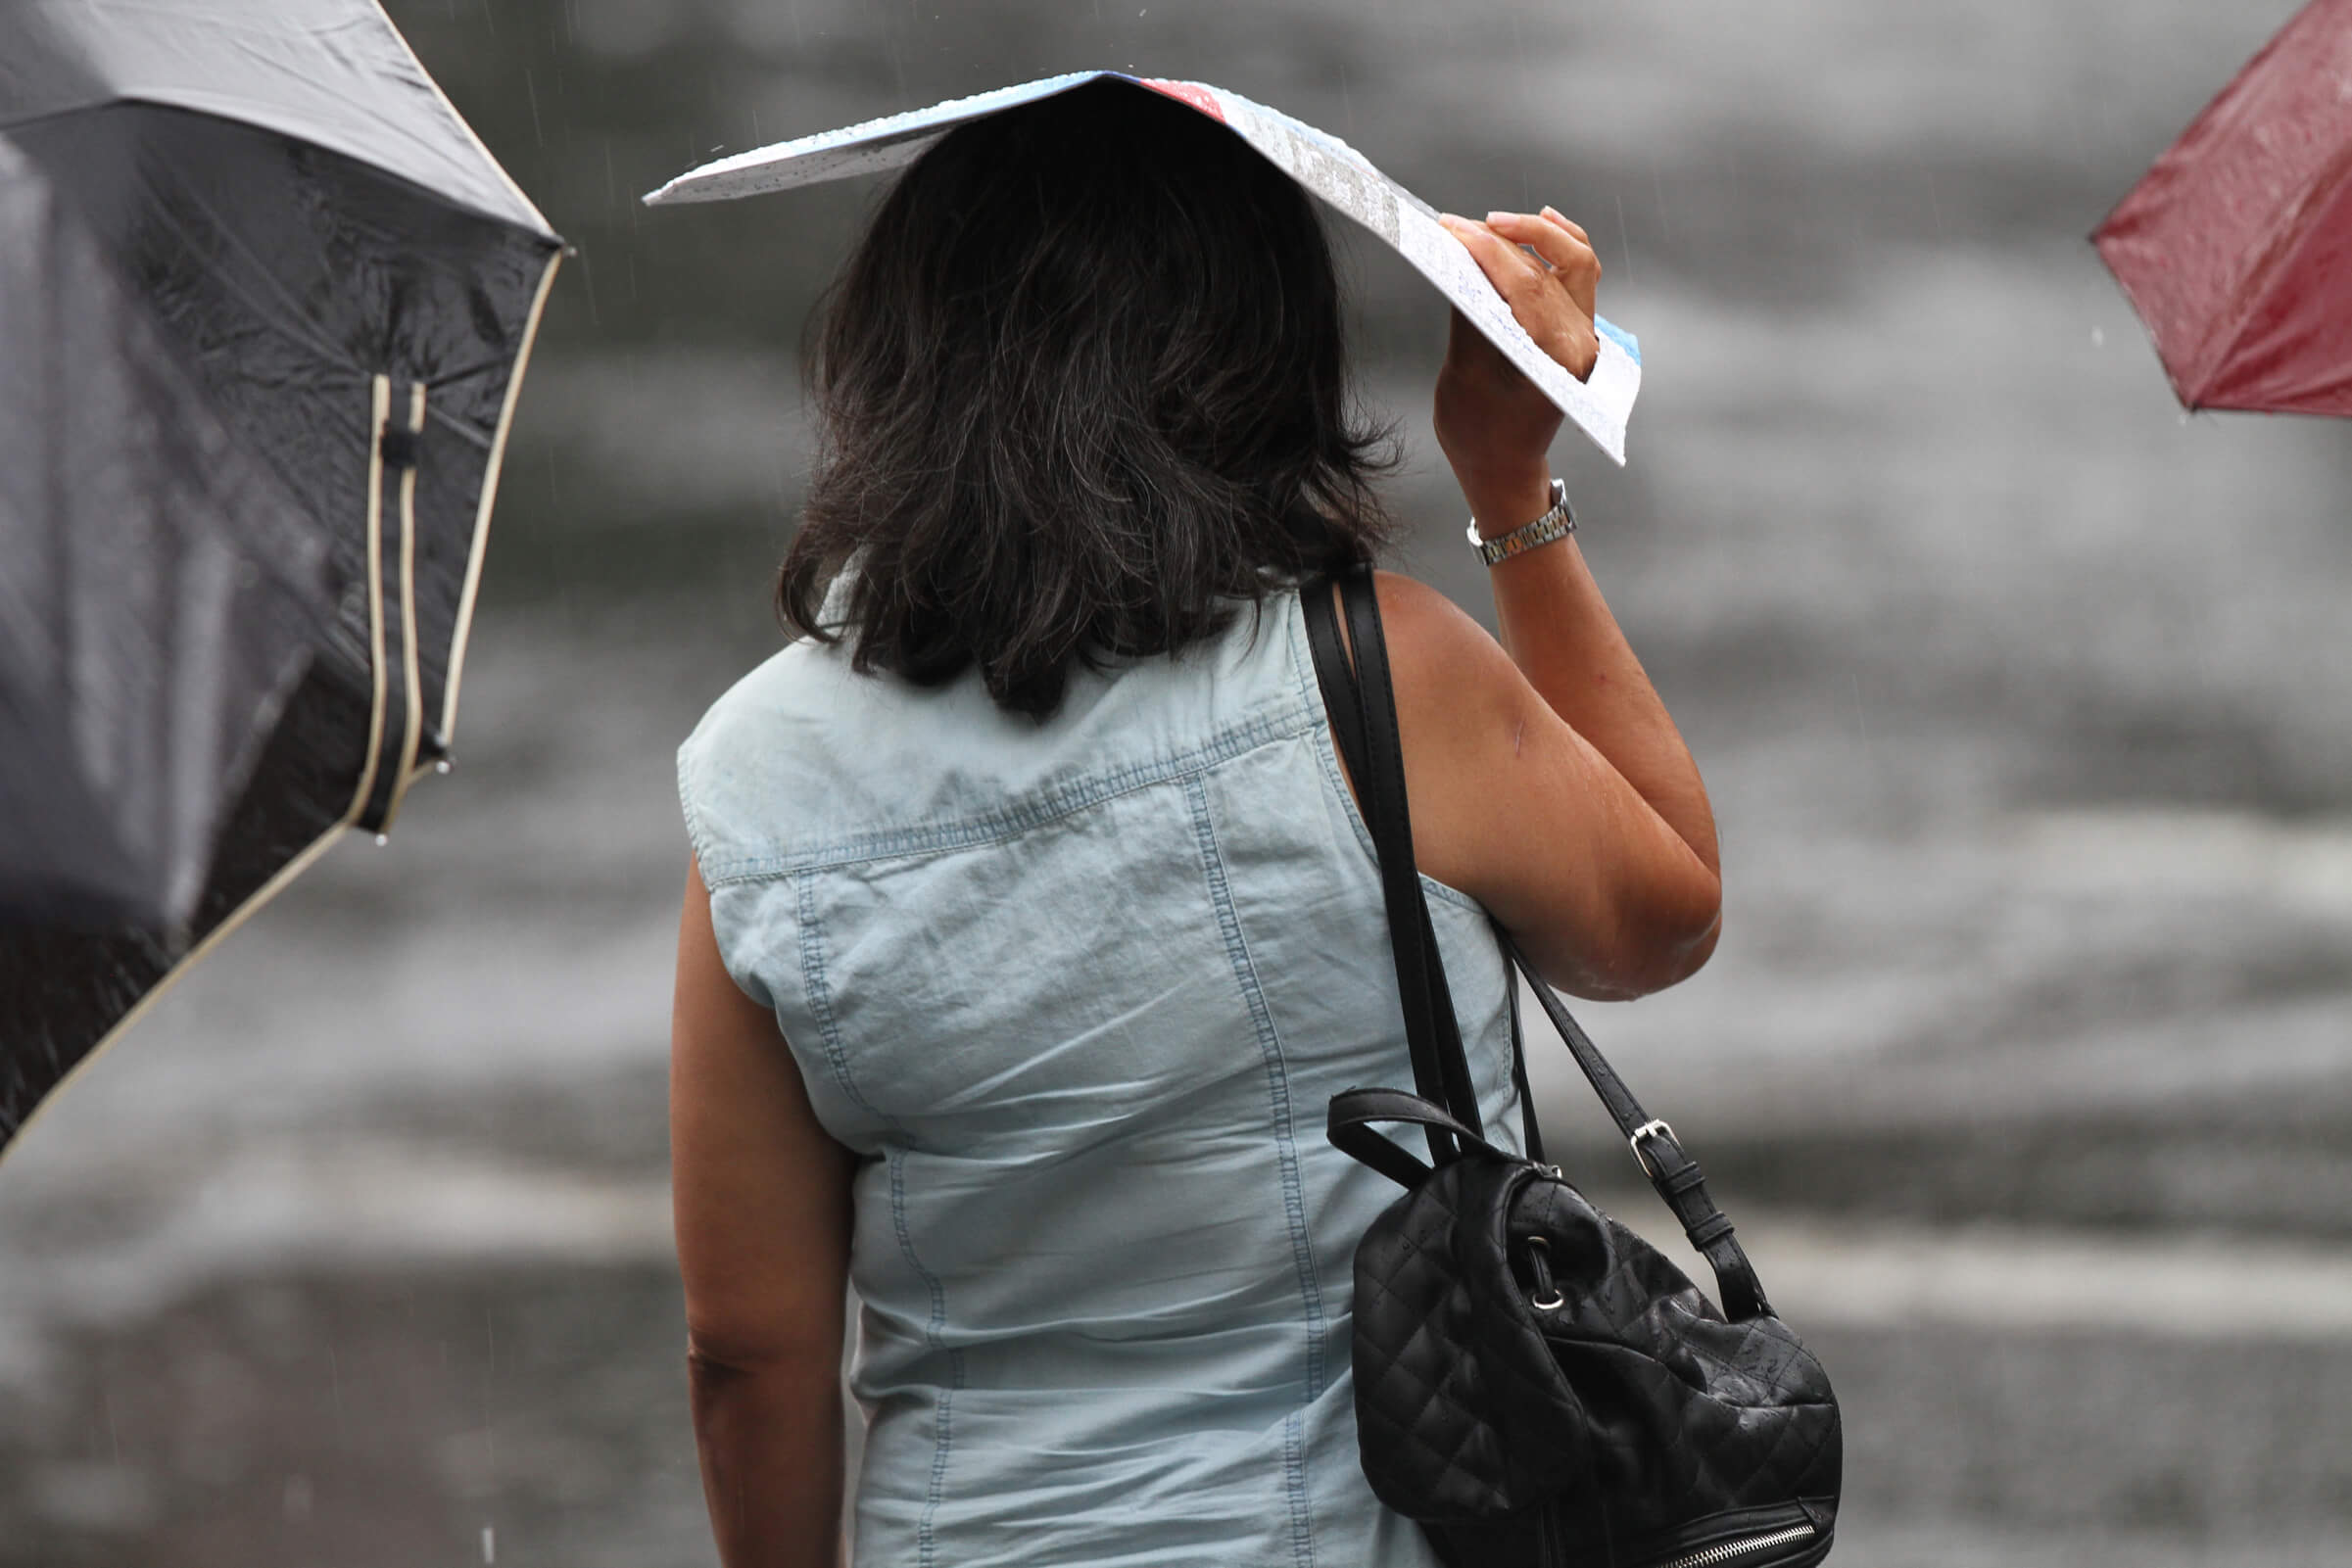 Clima Campeche hoy: Continúan las lluvias y el calor